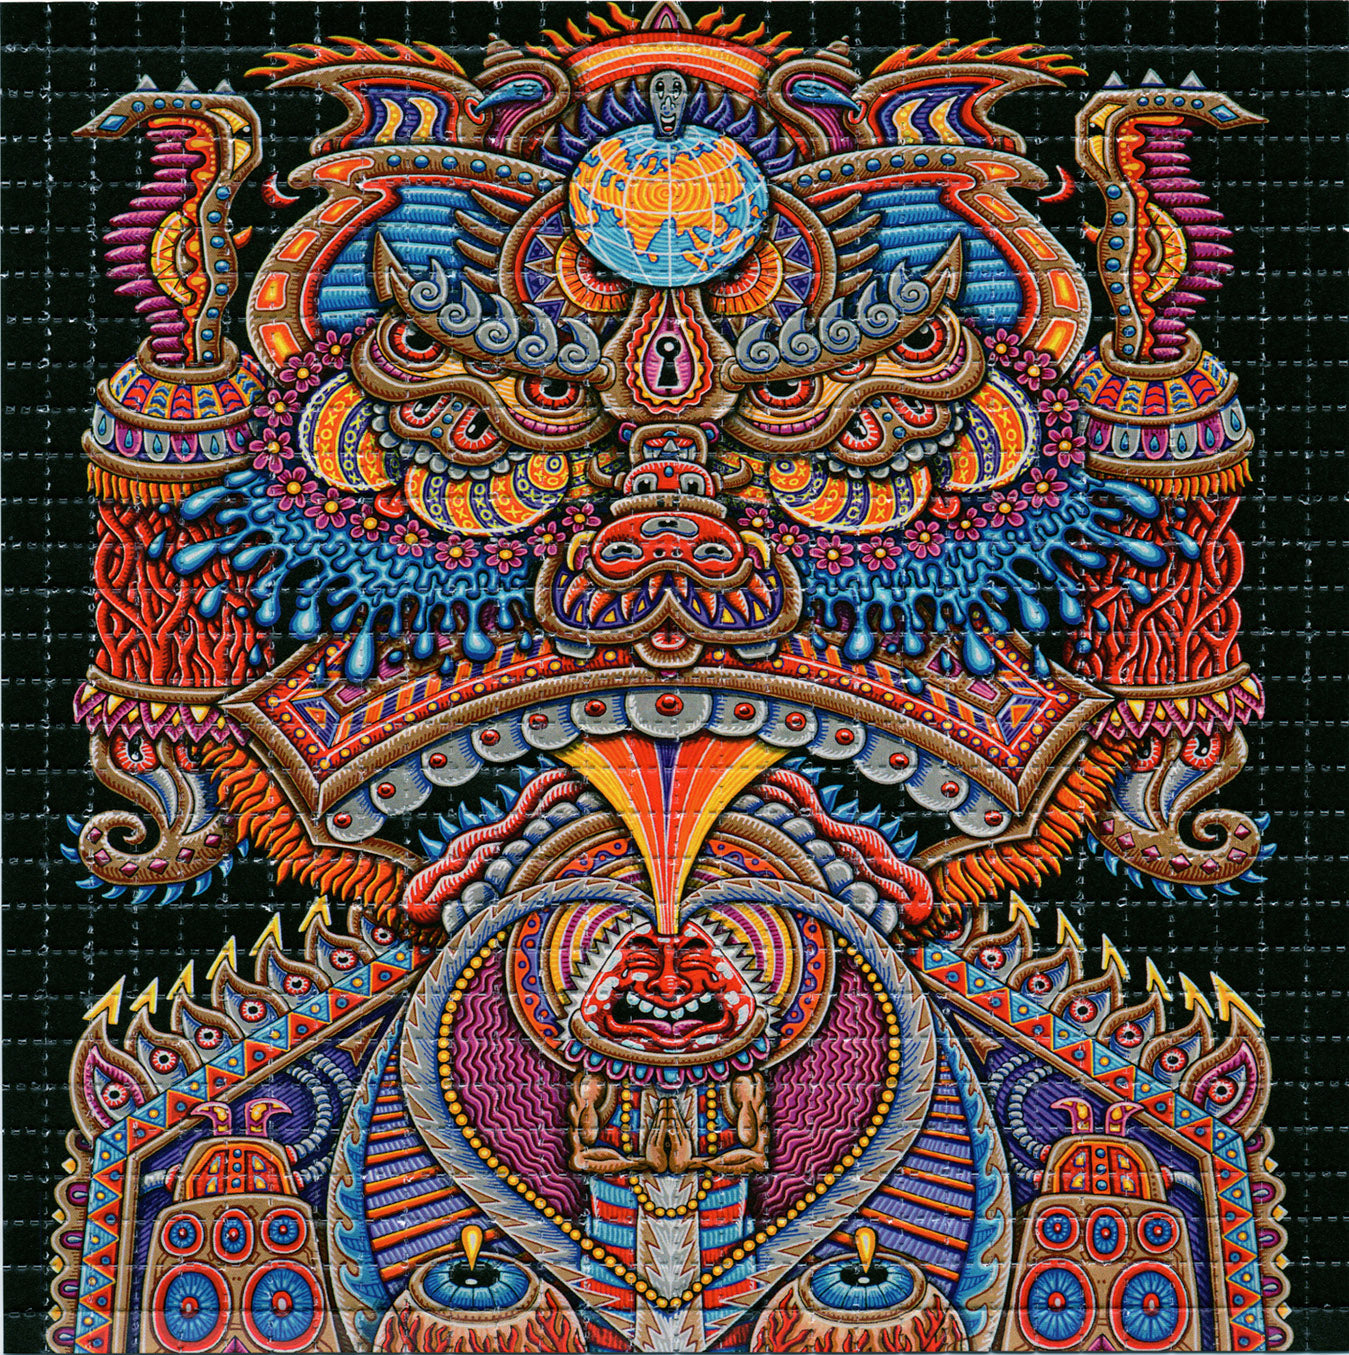 Kundalini Rising by Chris Dyer LSD blotter art print